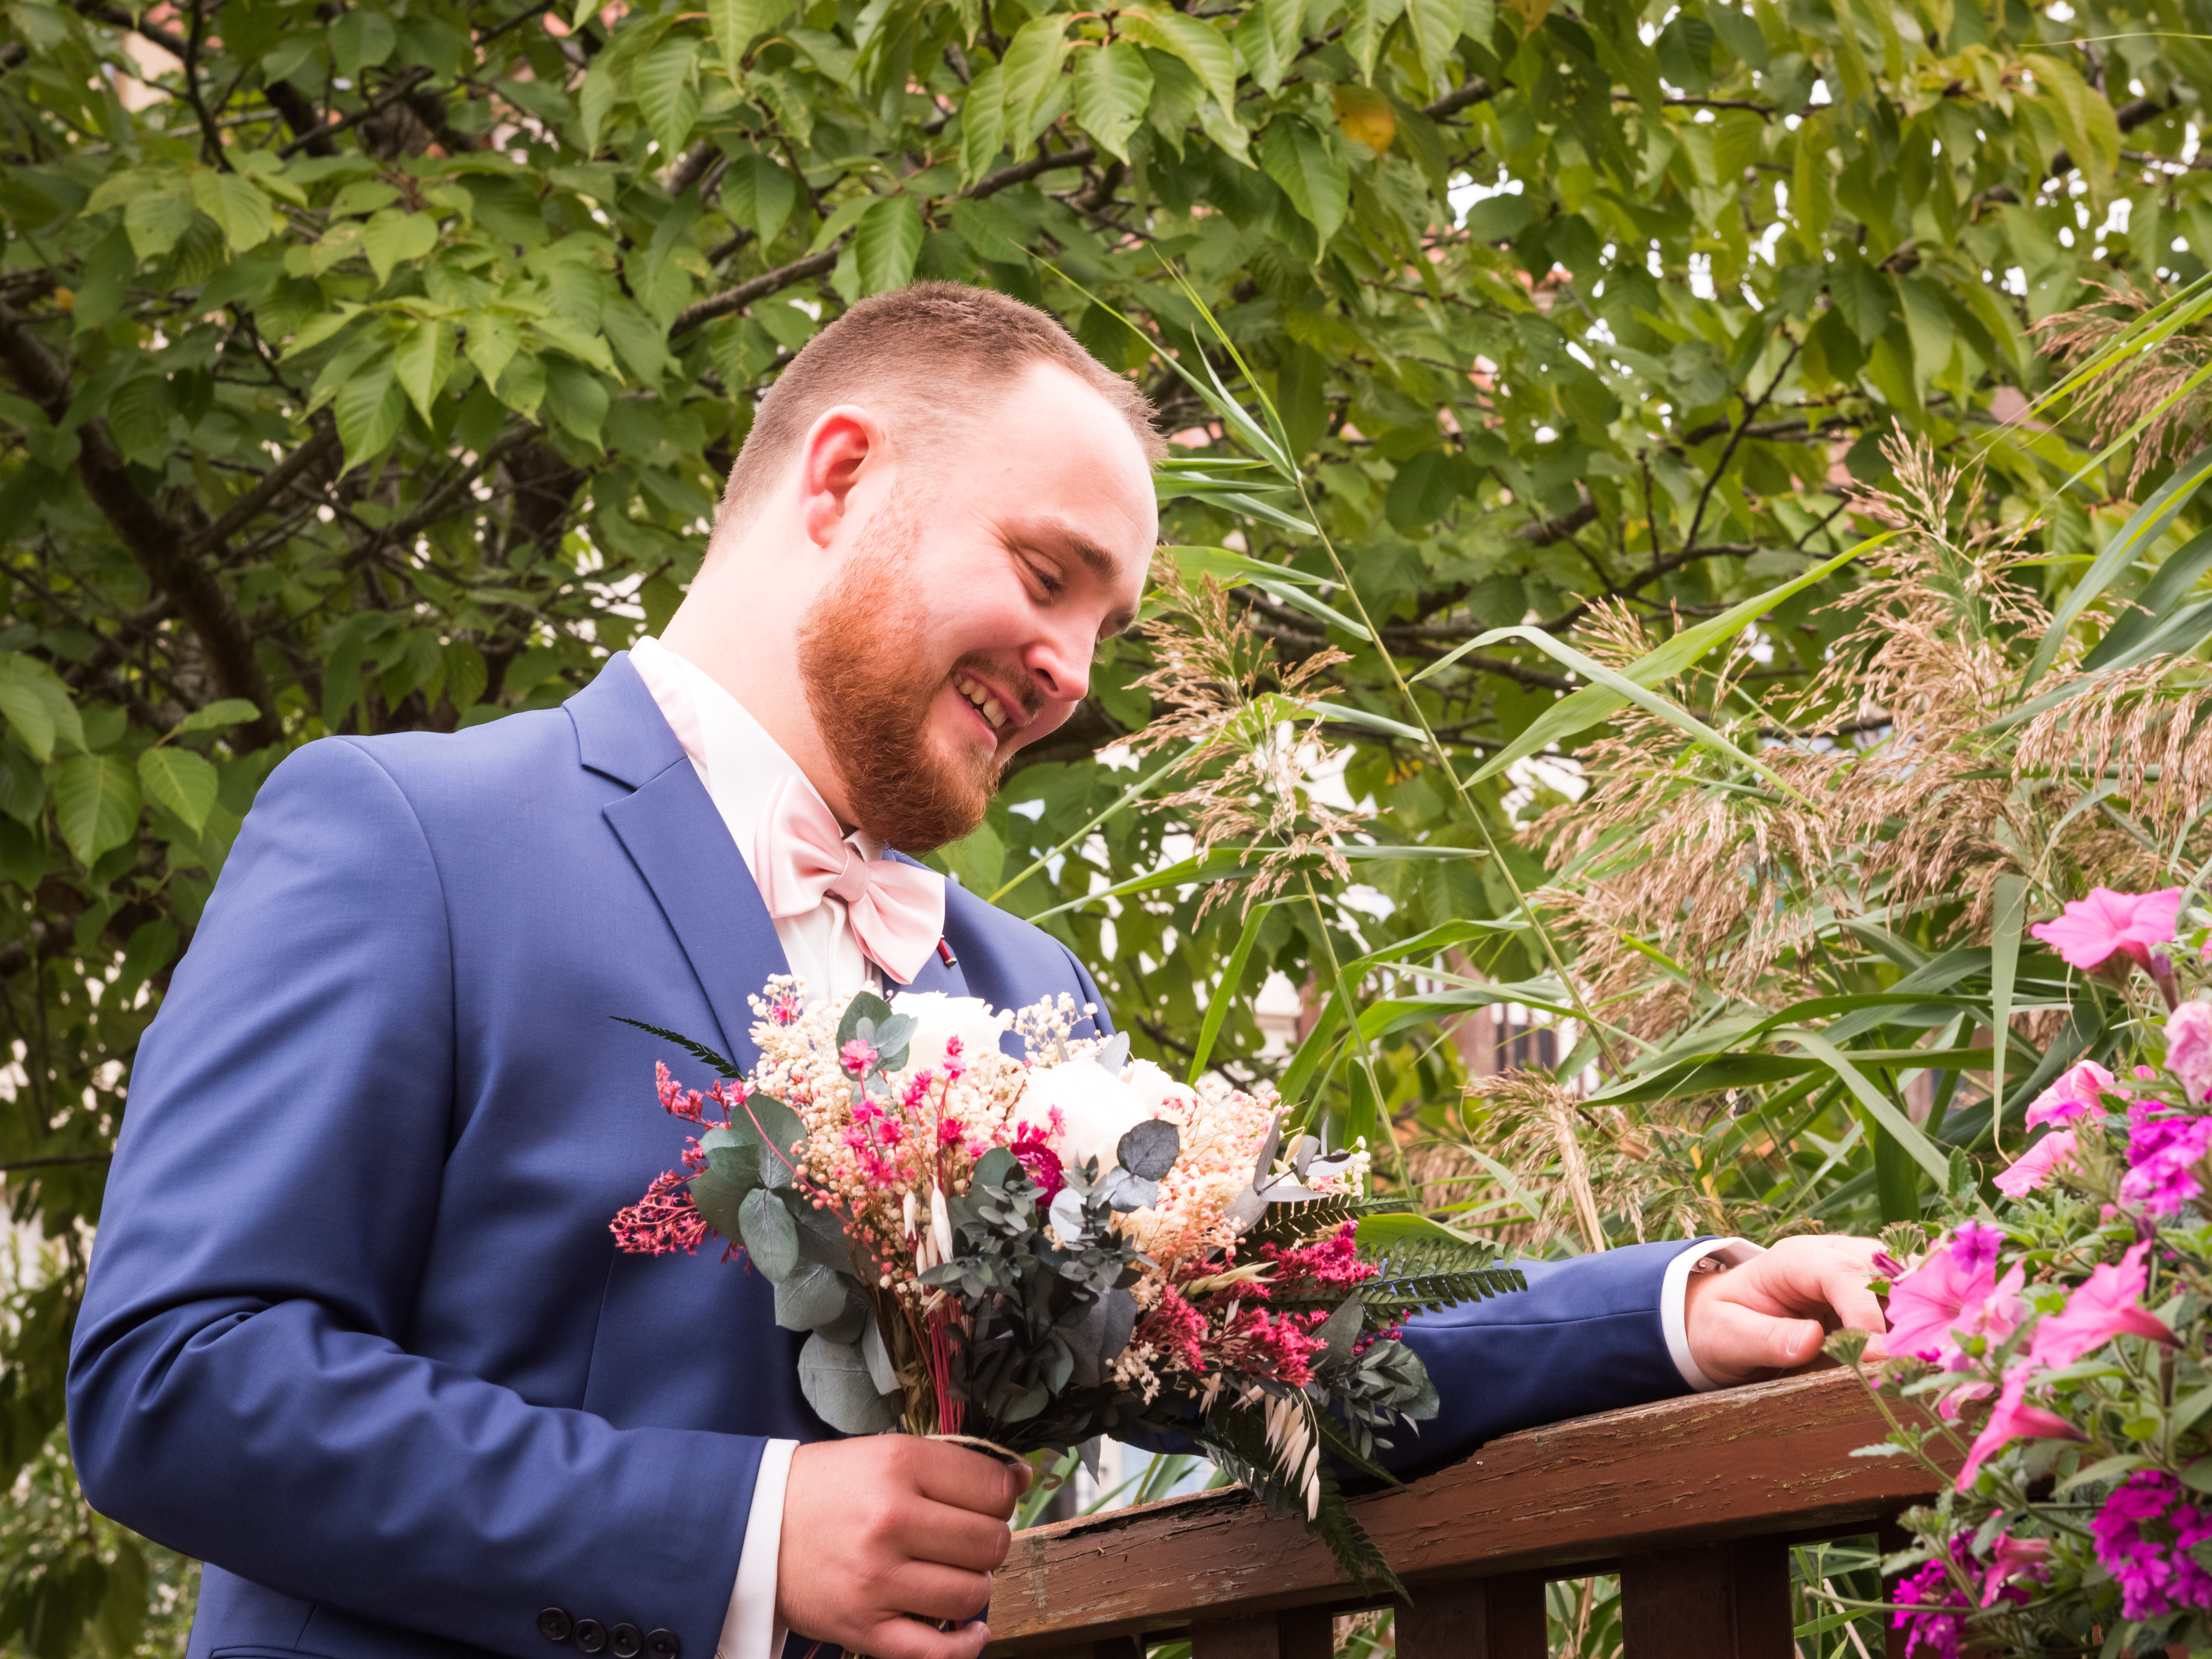 Mariage de Laurie et Valentin first look, le marié attend la mariée en tenant son bouquet de fleurs séchées